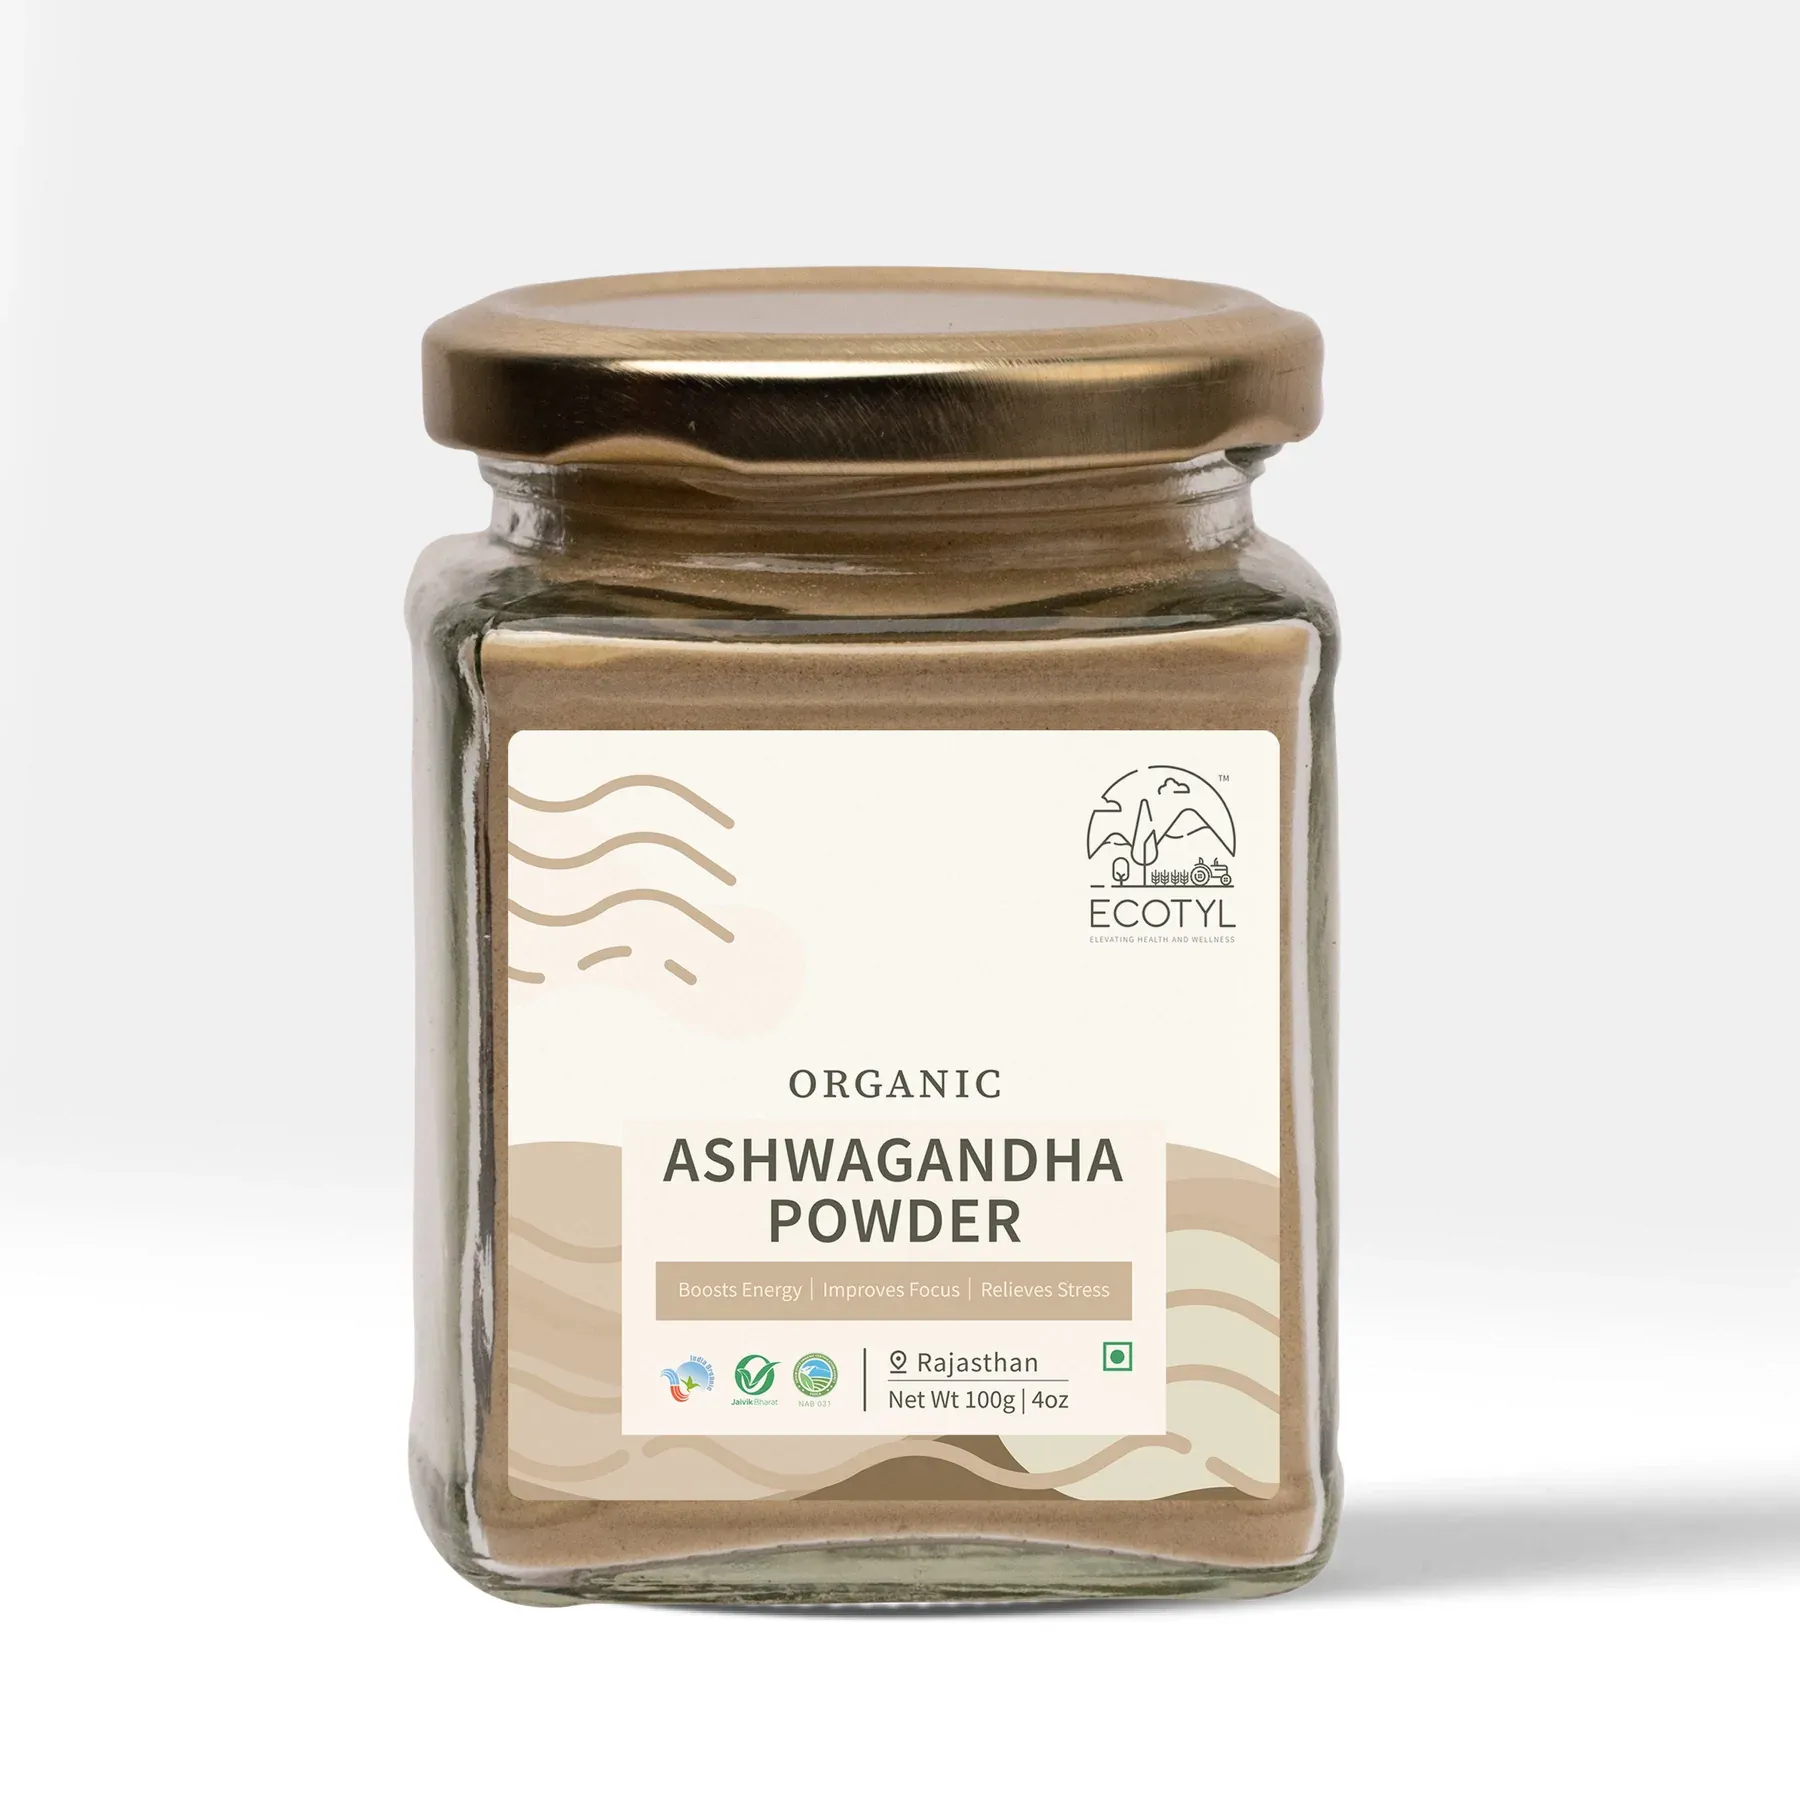 Ecotyl Organic Ashwagandha Powder Image